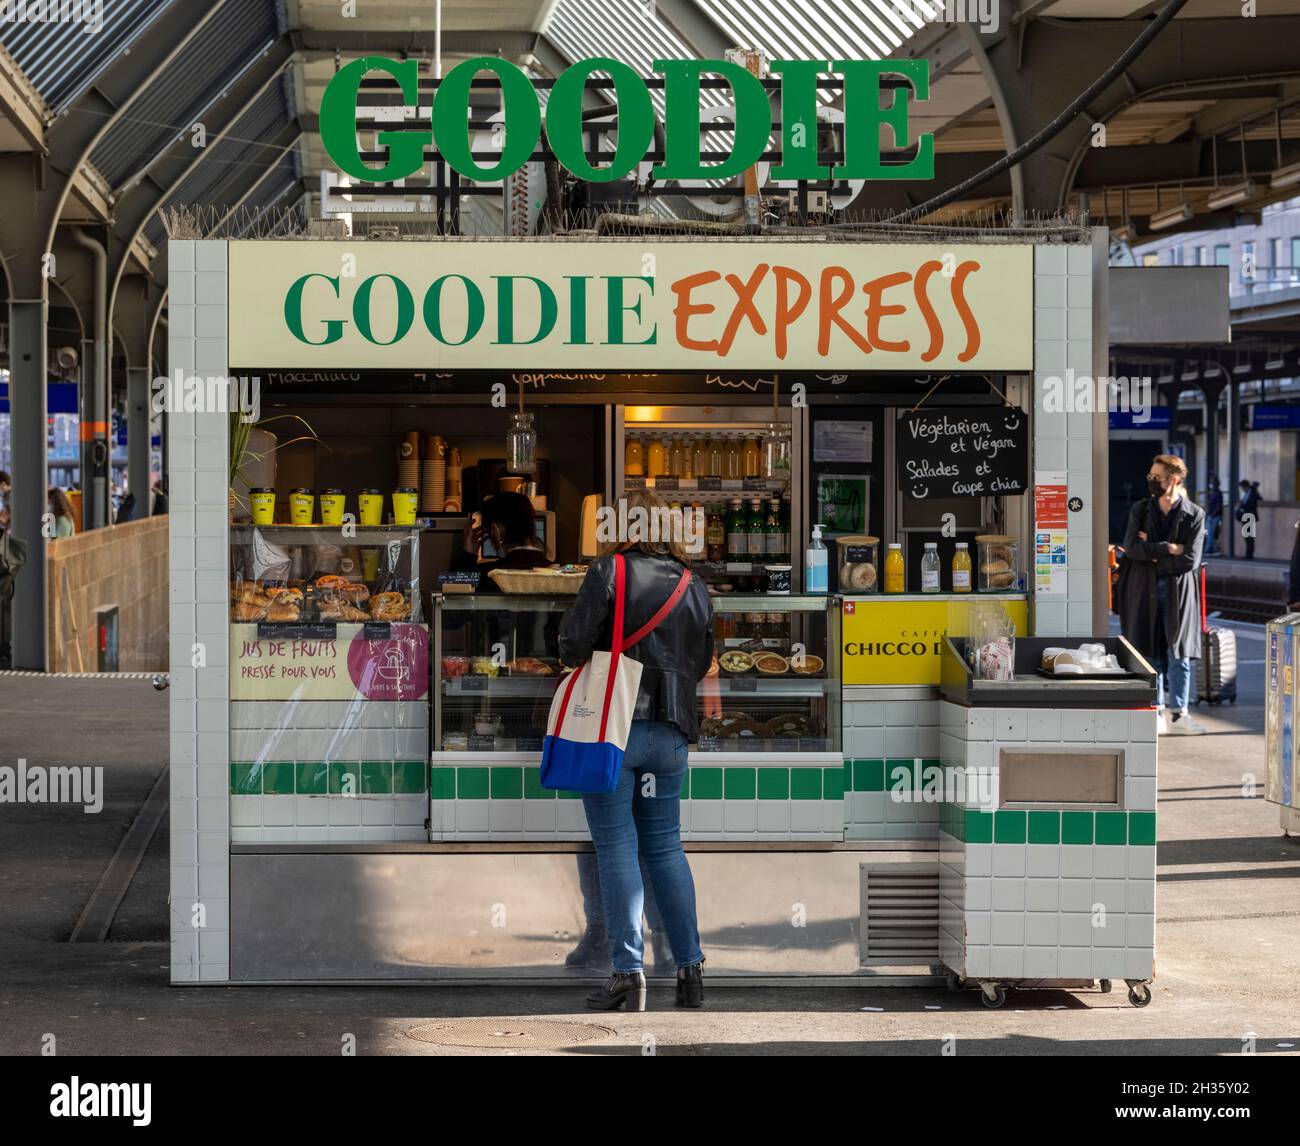 Tienda de comida rápida Goodie Express en plataforma, estación de tren Ginebra-Cornavin, Ginebra, Suiza Foto de stock